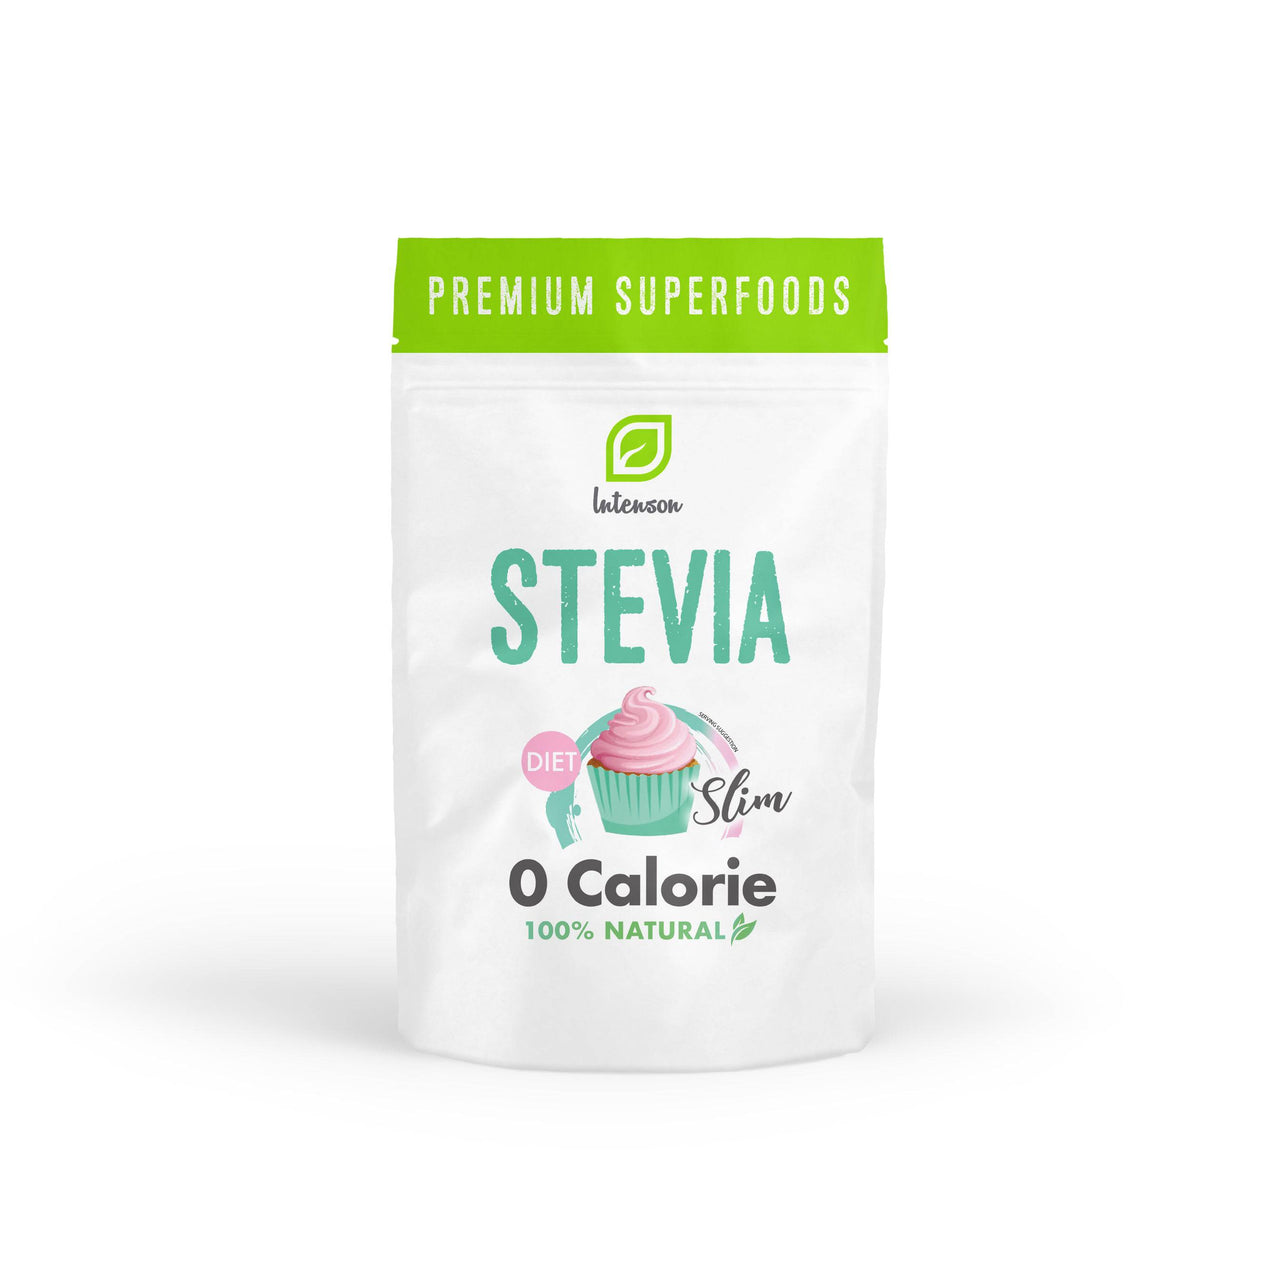 Stevia w kryształkach 250g - 0 kcal - Intenson.pl